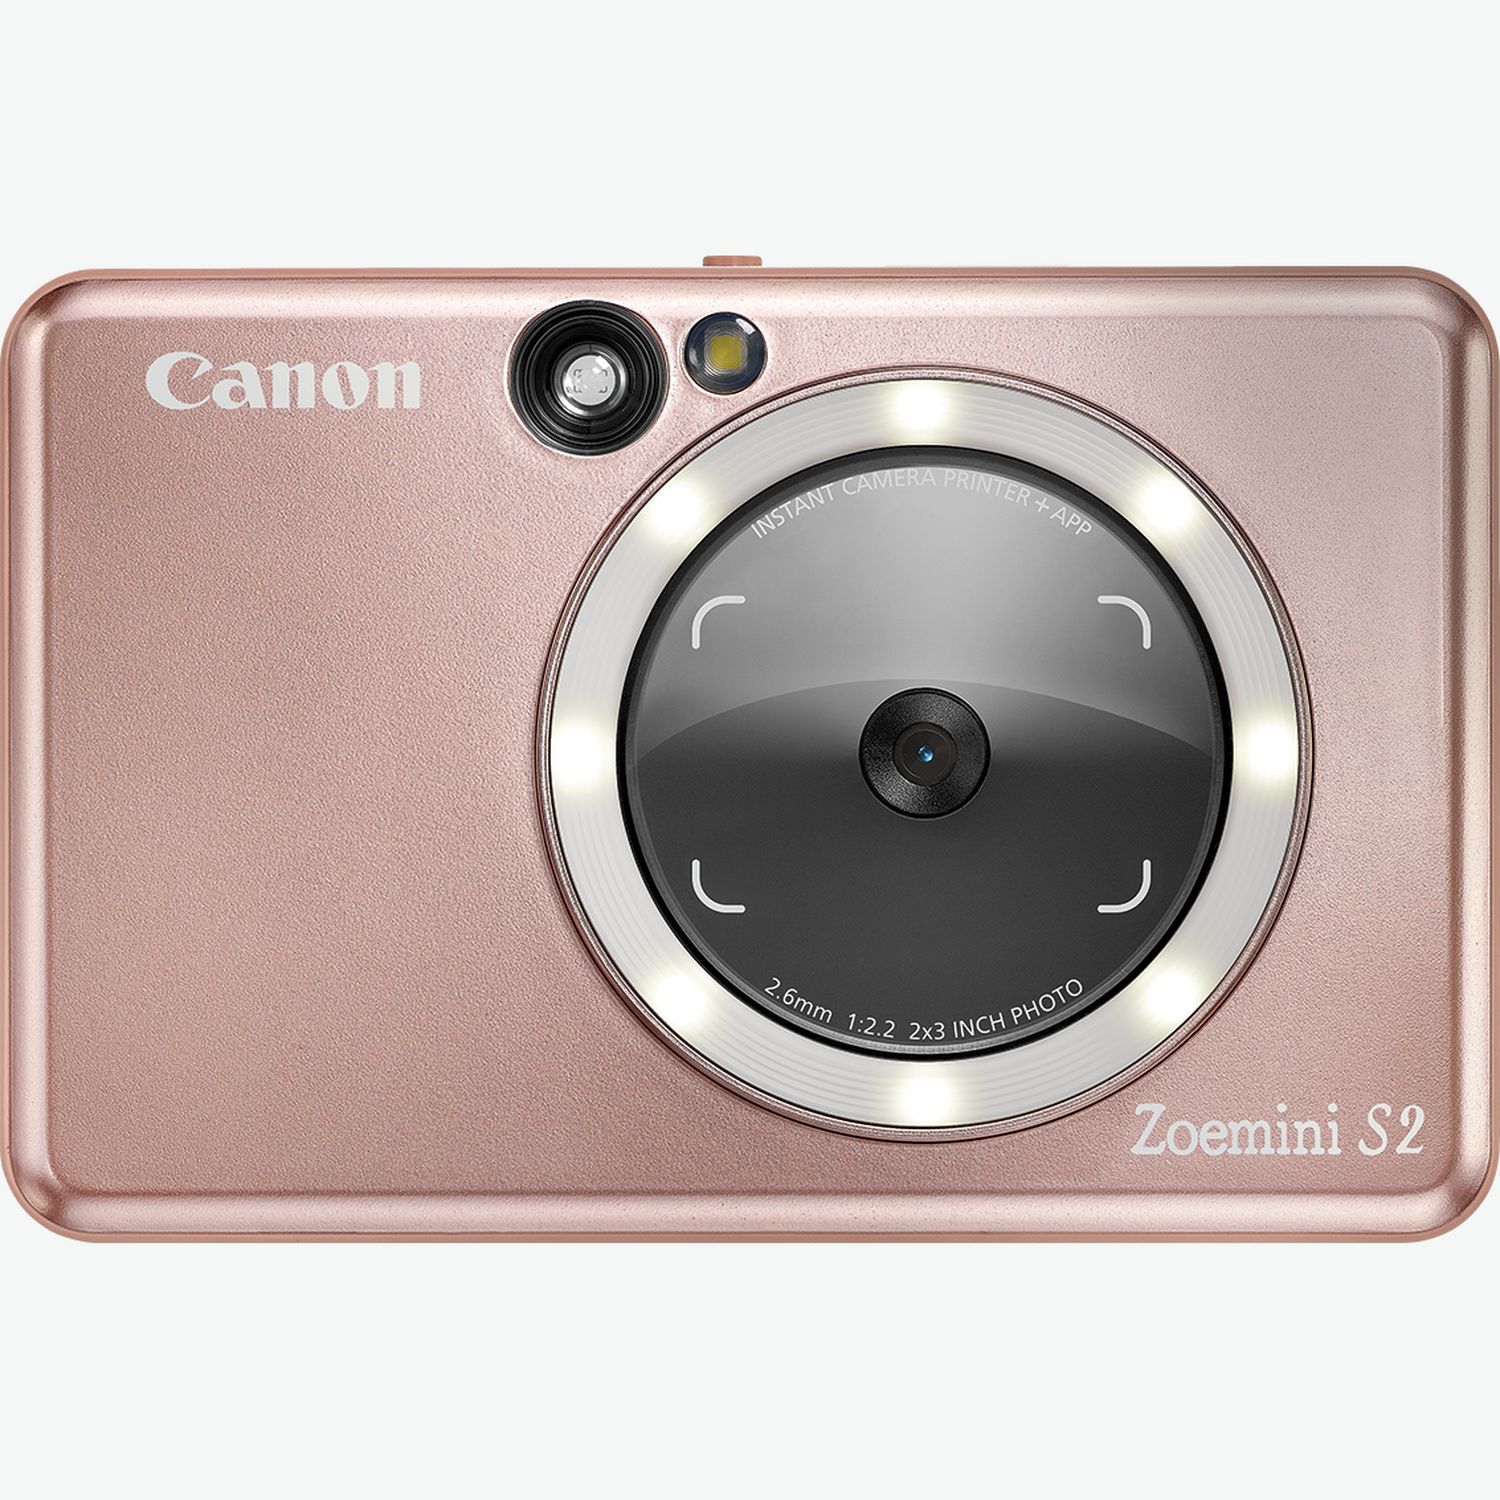 Imprimante photo couleur portable Canon Zoemini 2, blanc + papier photo  autocollant ZINK™ 5 × 7,6 cm (20 feuilles) + papier autocollant circulaire  ZINK™ 3,3 cm (10 feuilles) dans Imprimantes Wi-Fi — Boutique Canon Suisse